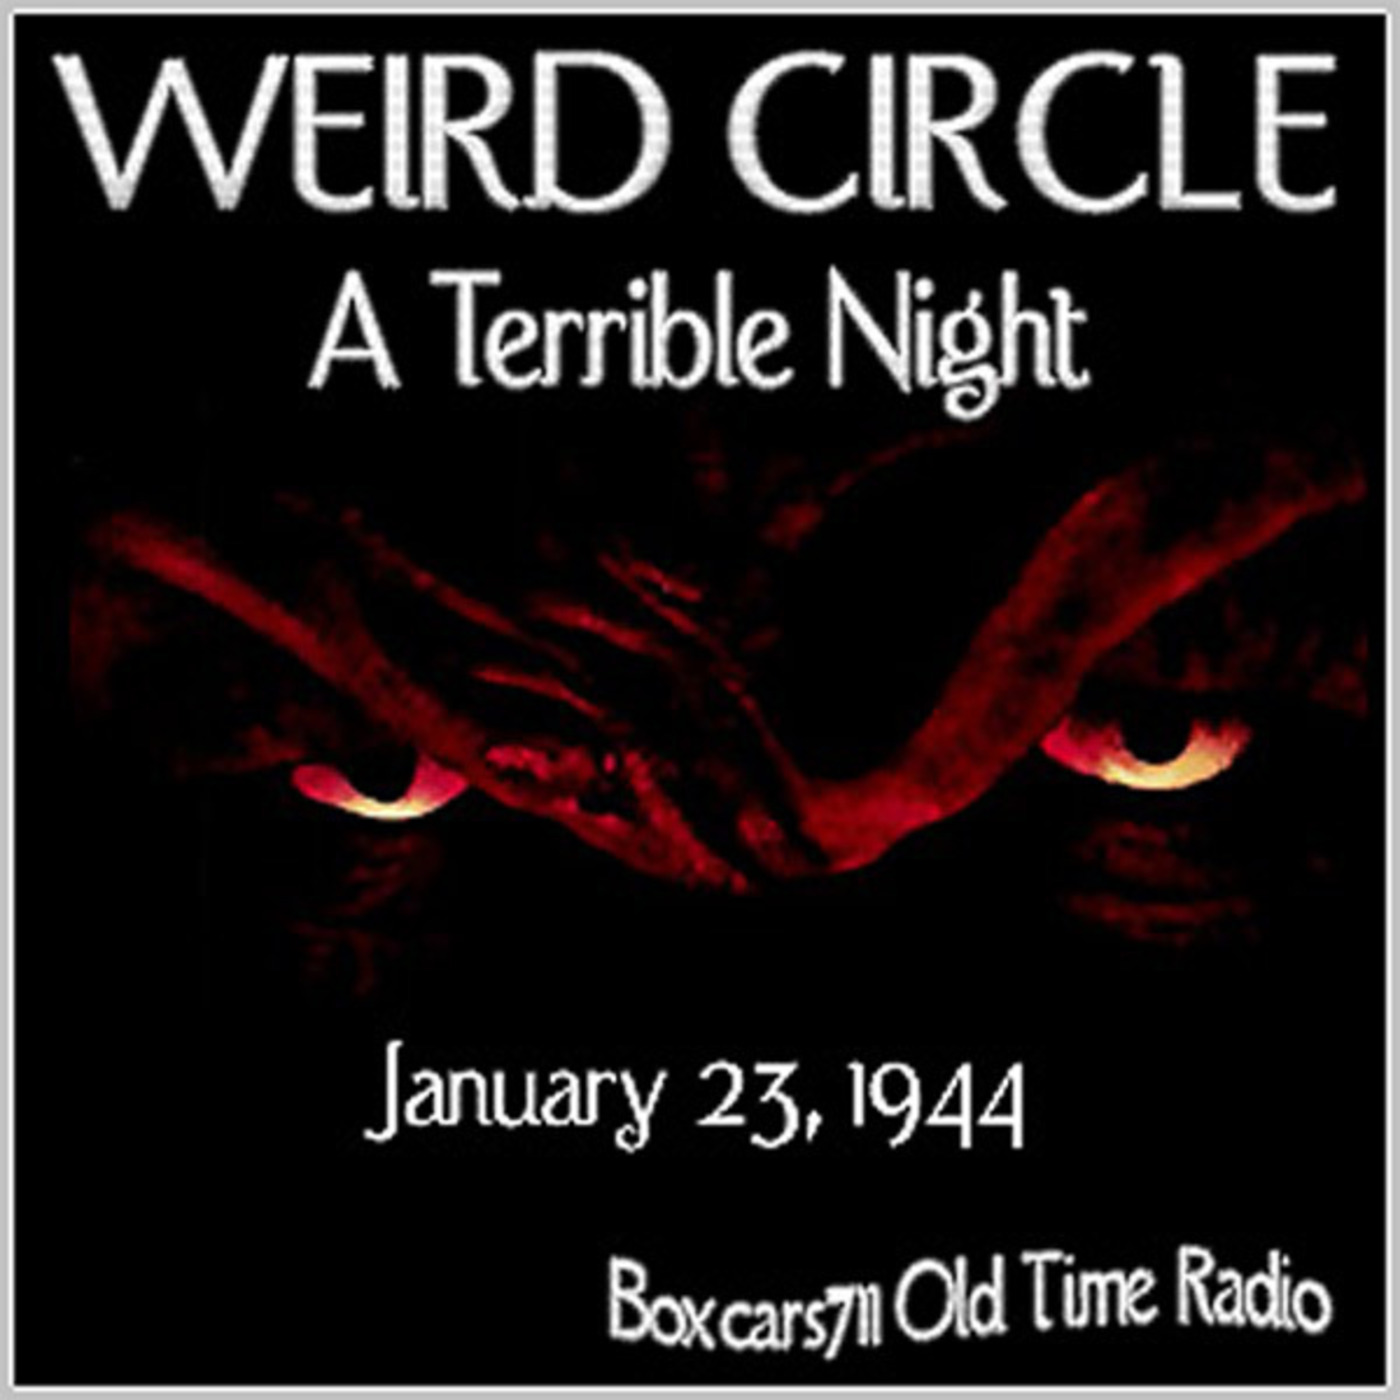 Episode 9539: The Weird Circle - 